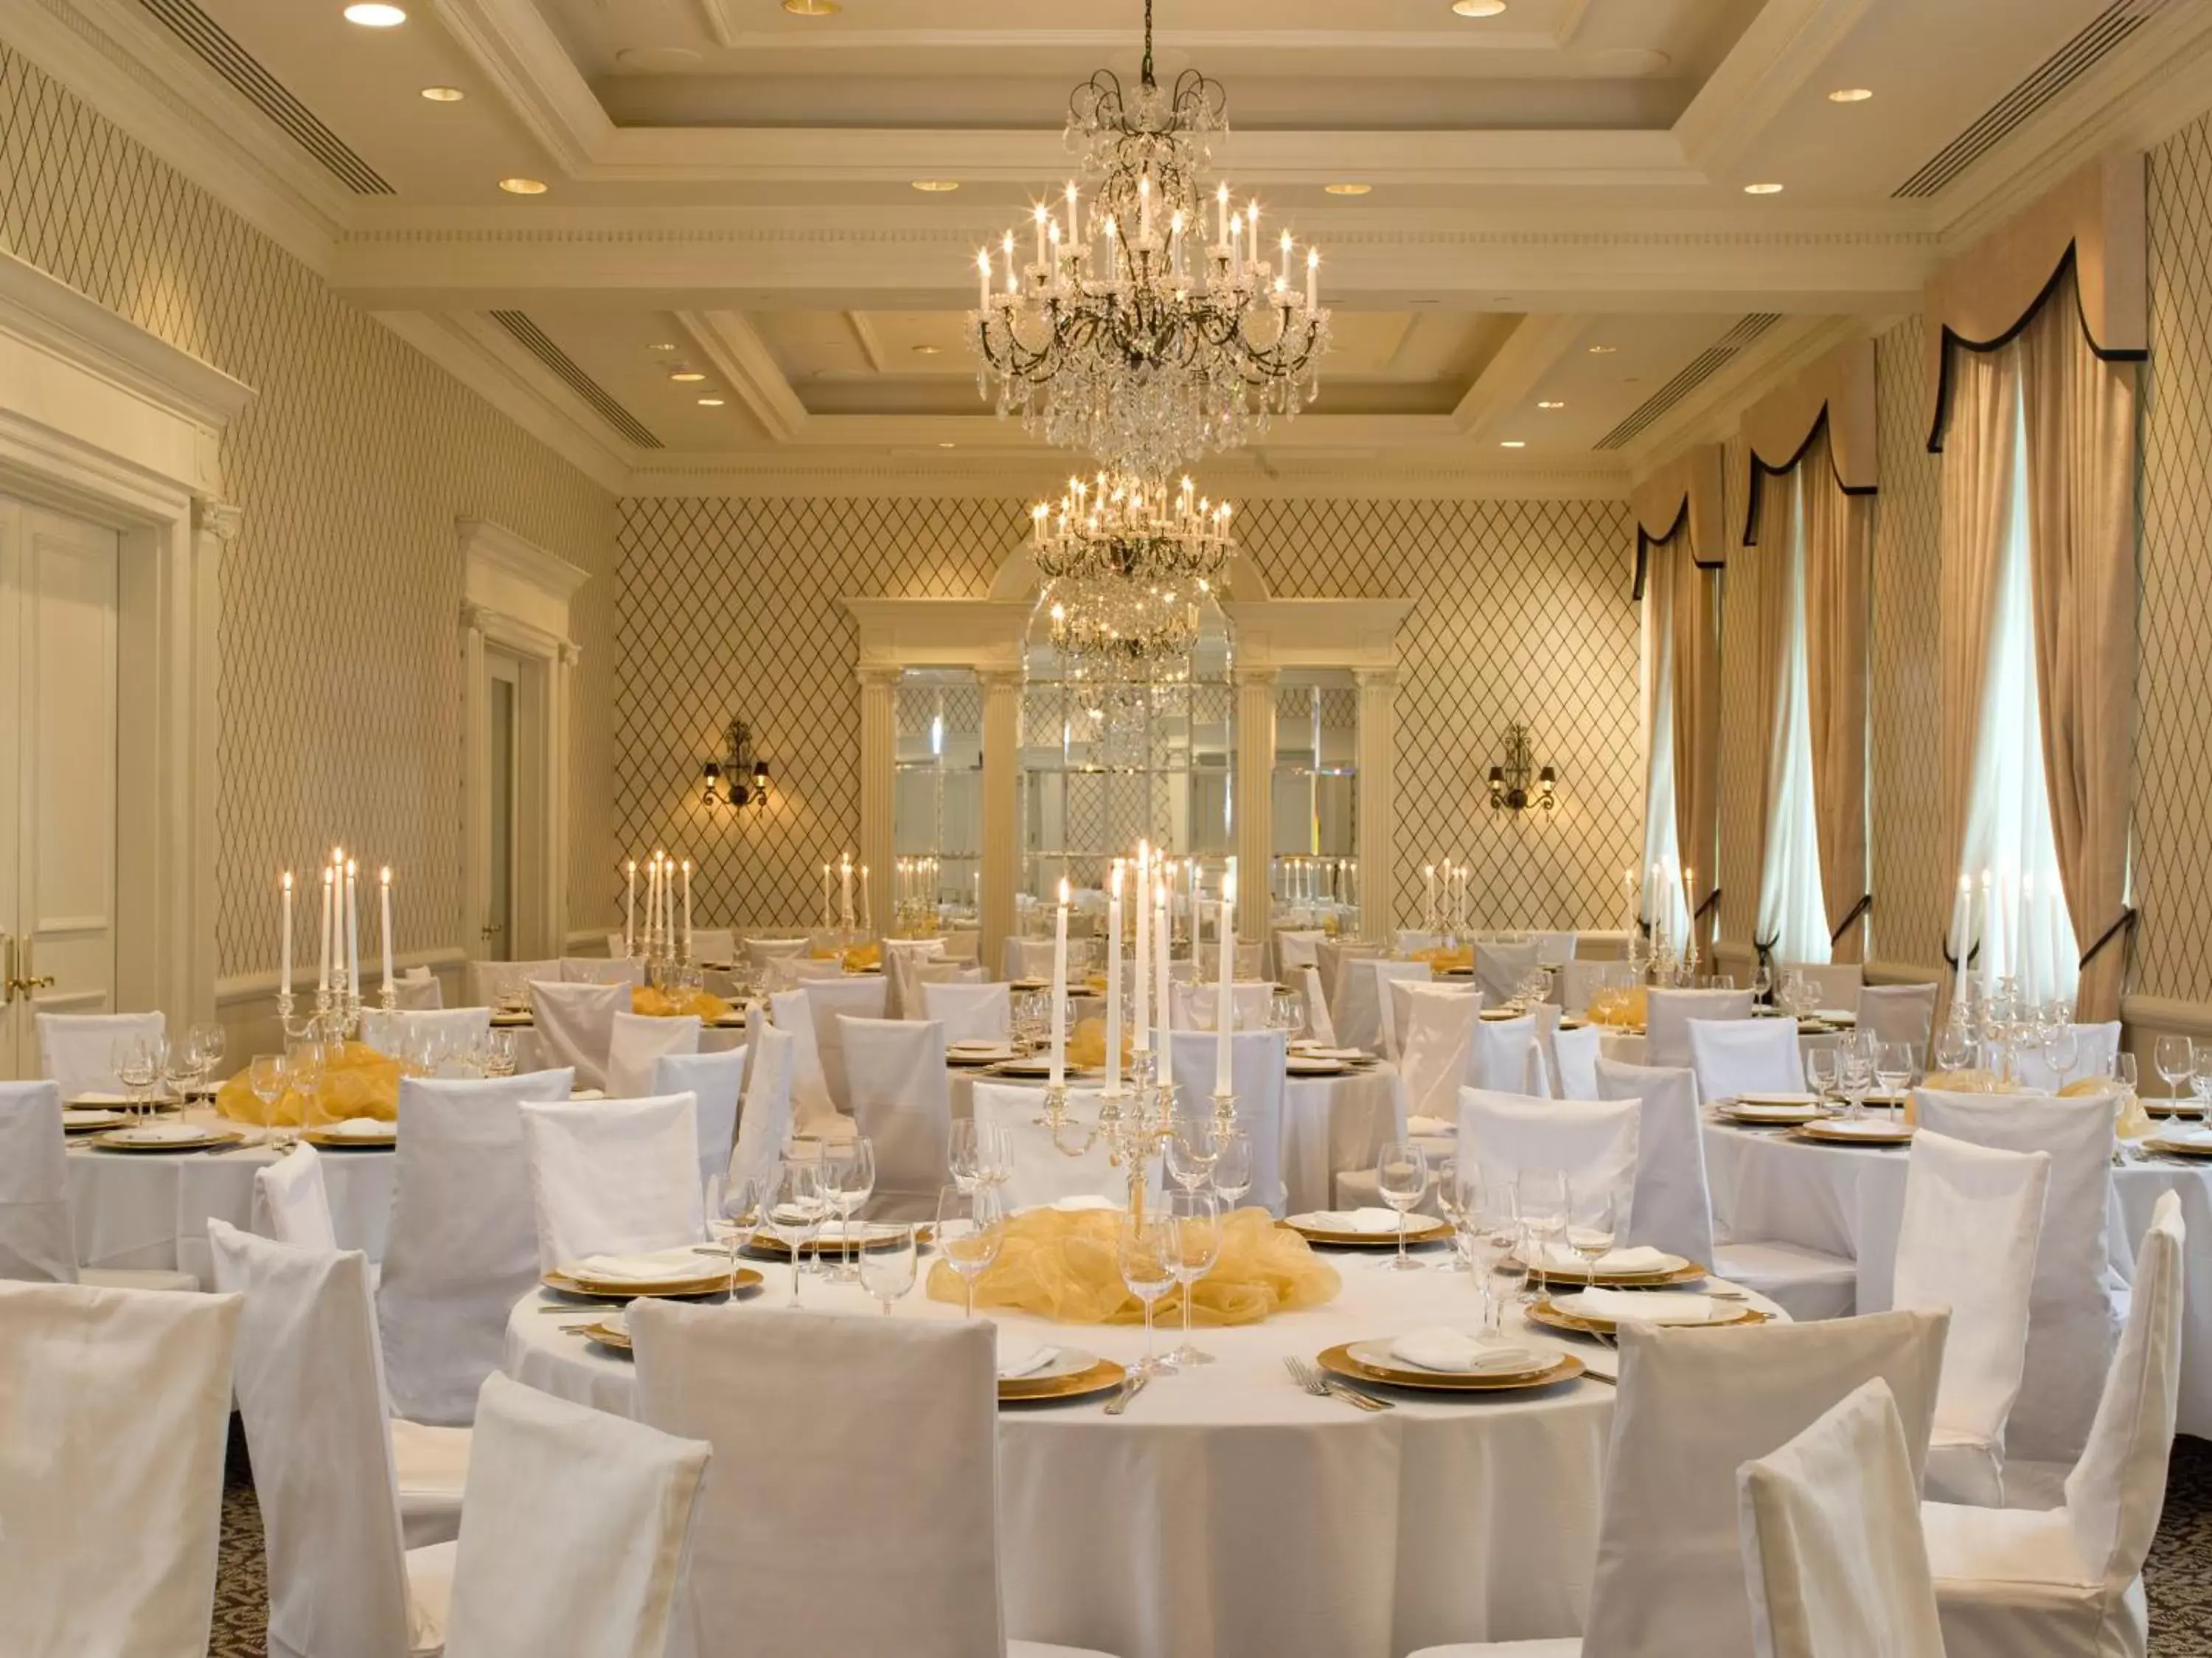 Banquet/Function facilities, Banquet Facilities in Empire Hotel